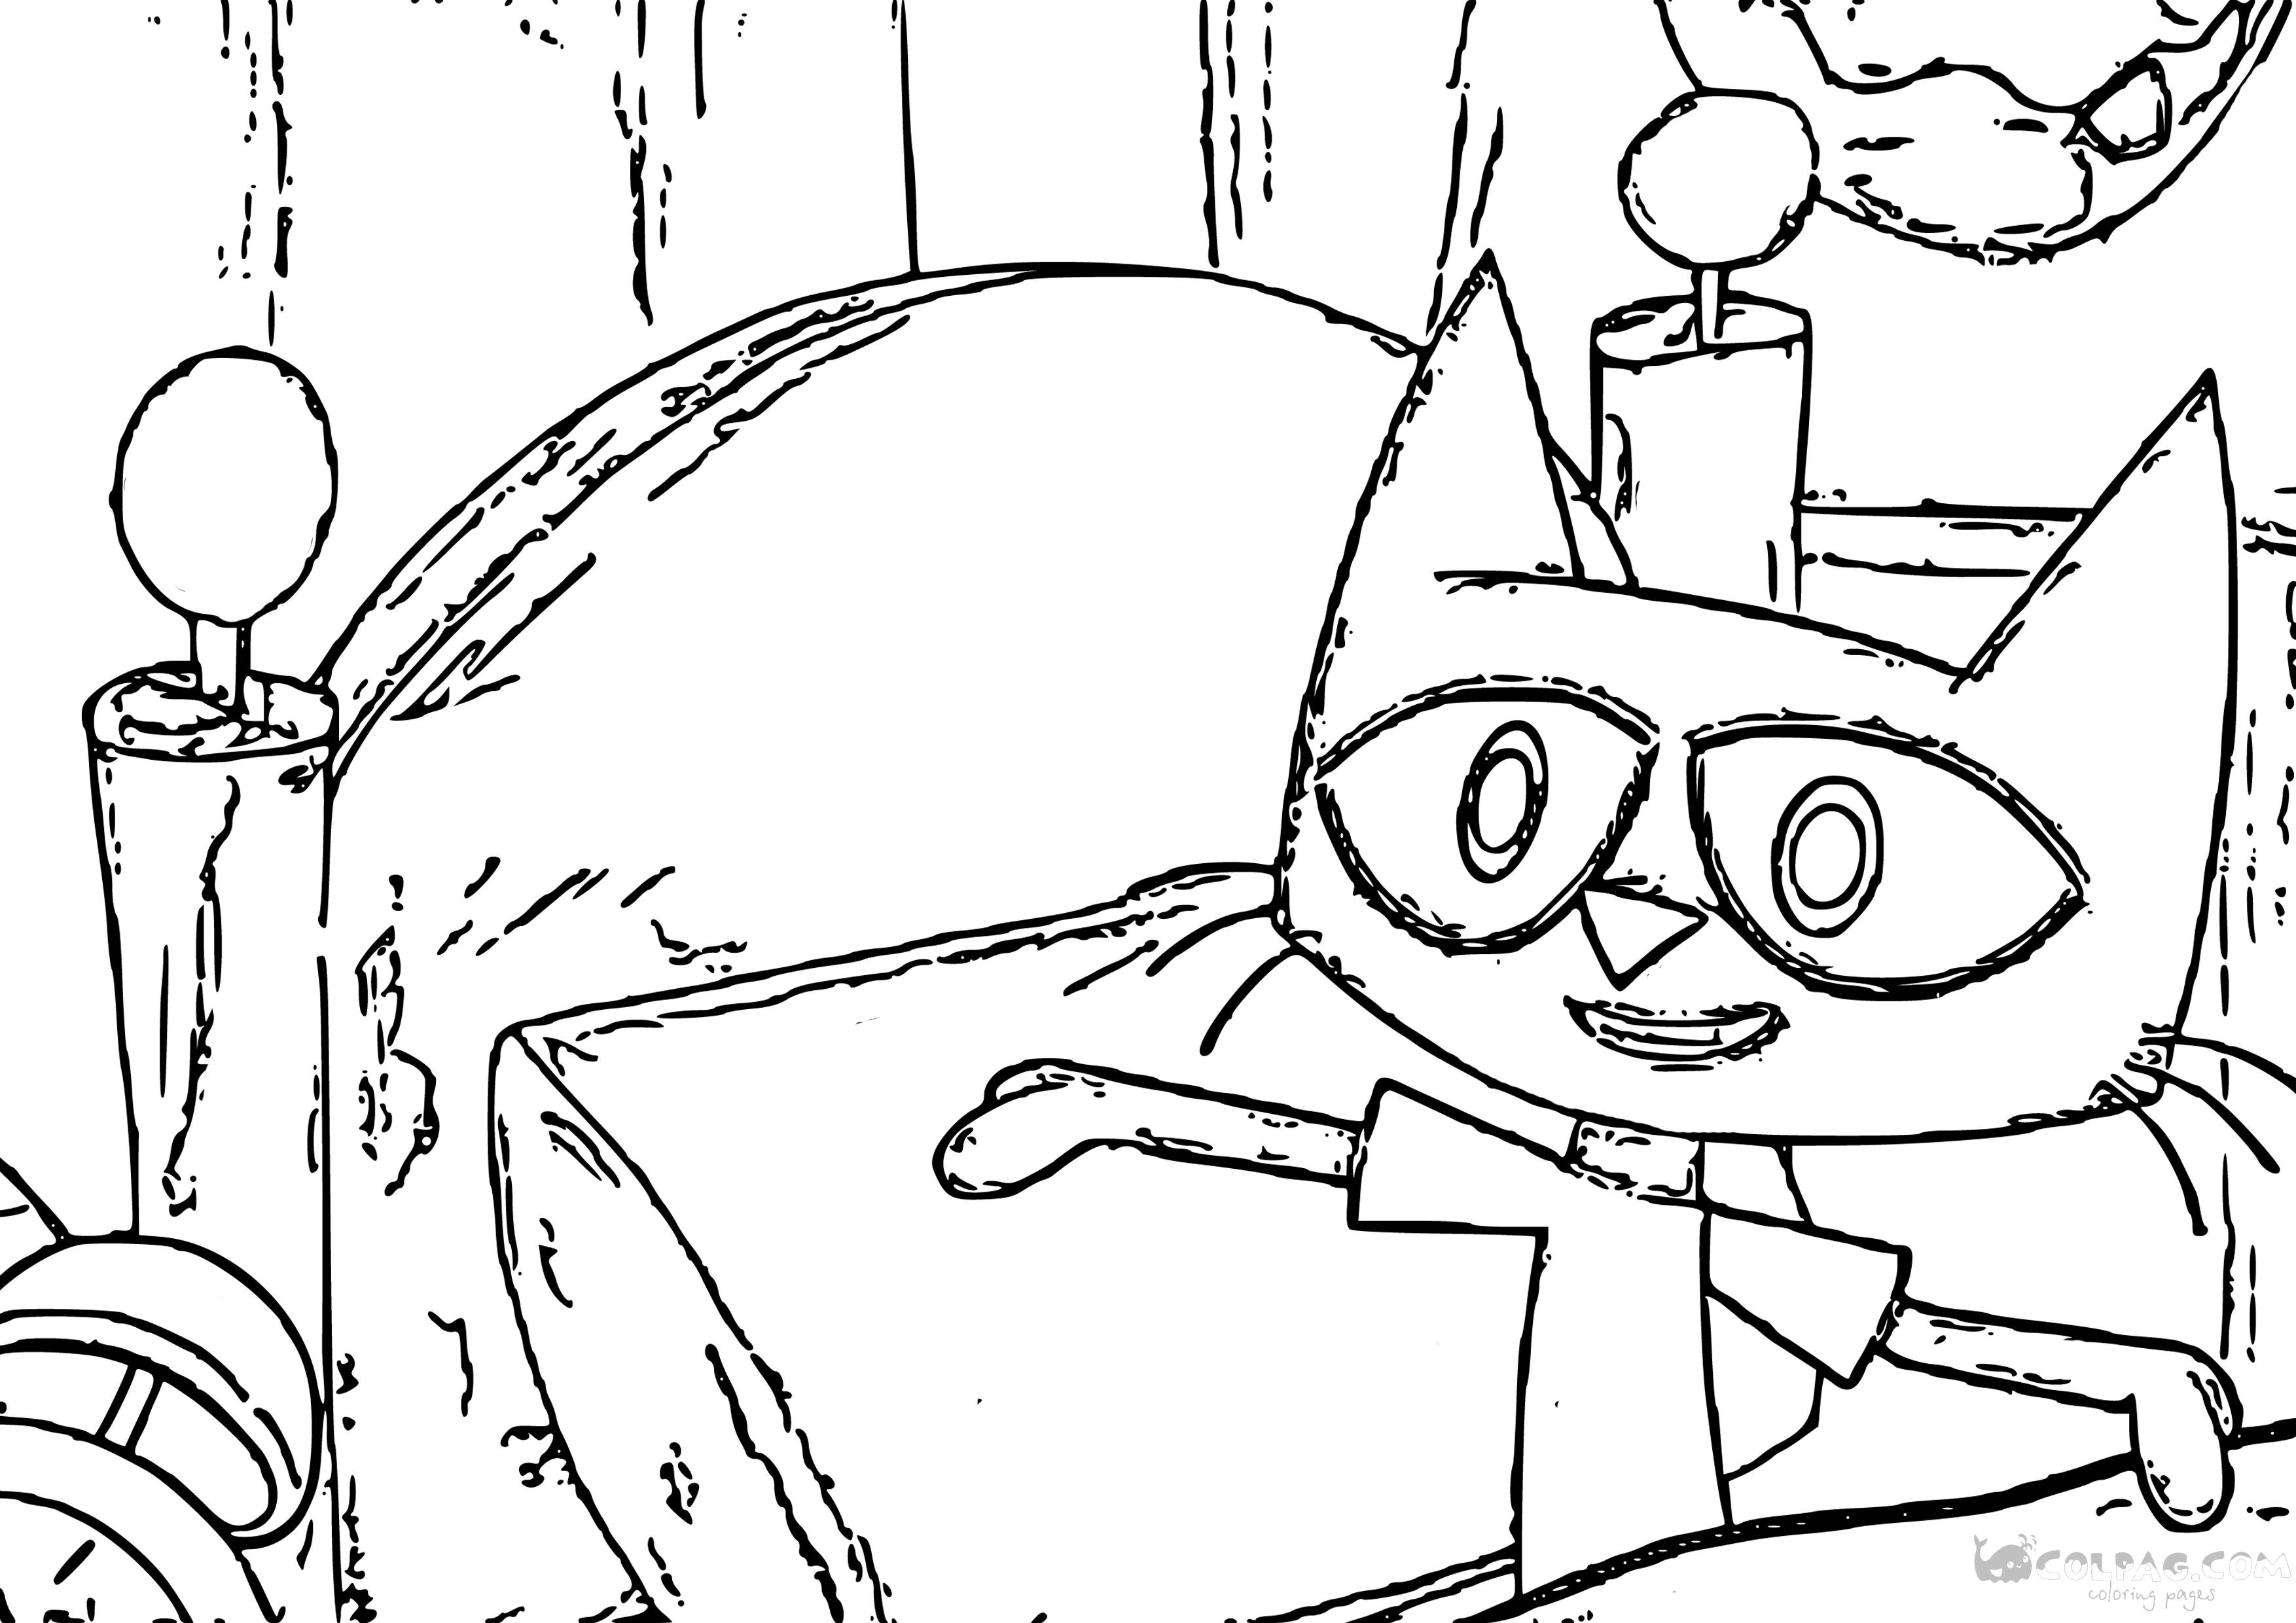 Dibujos de Pete el gato para colorear